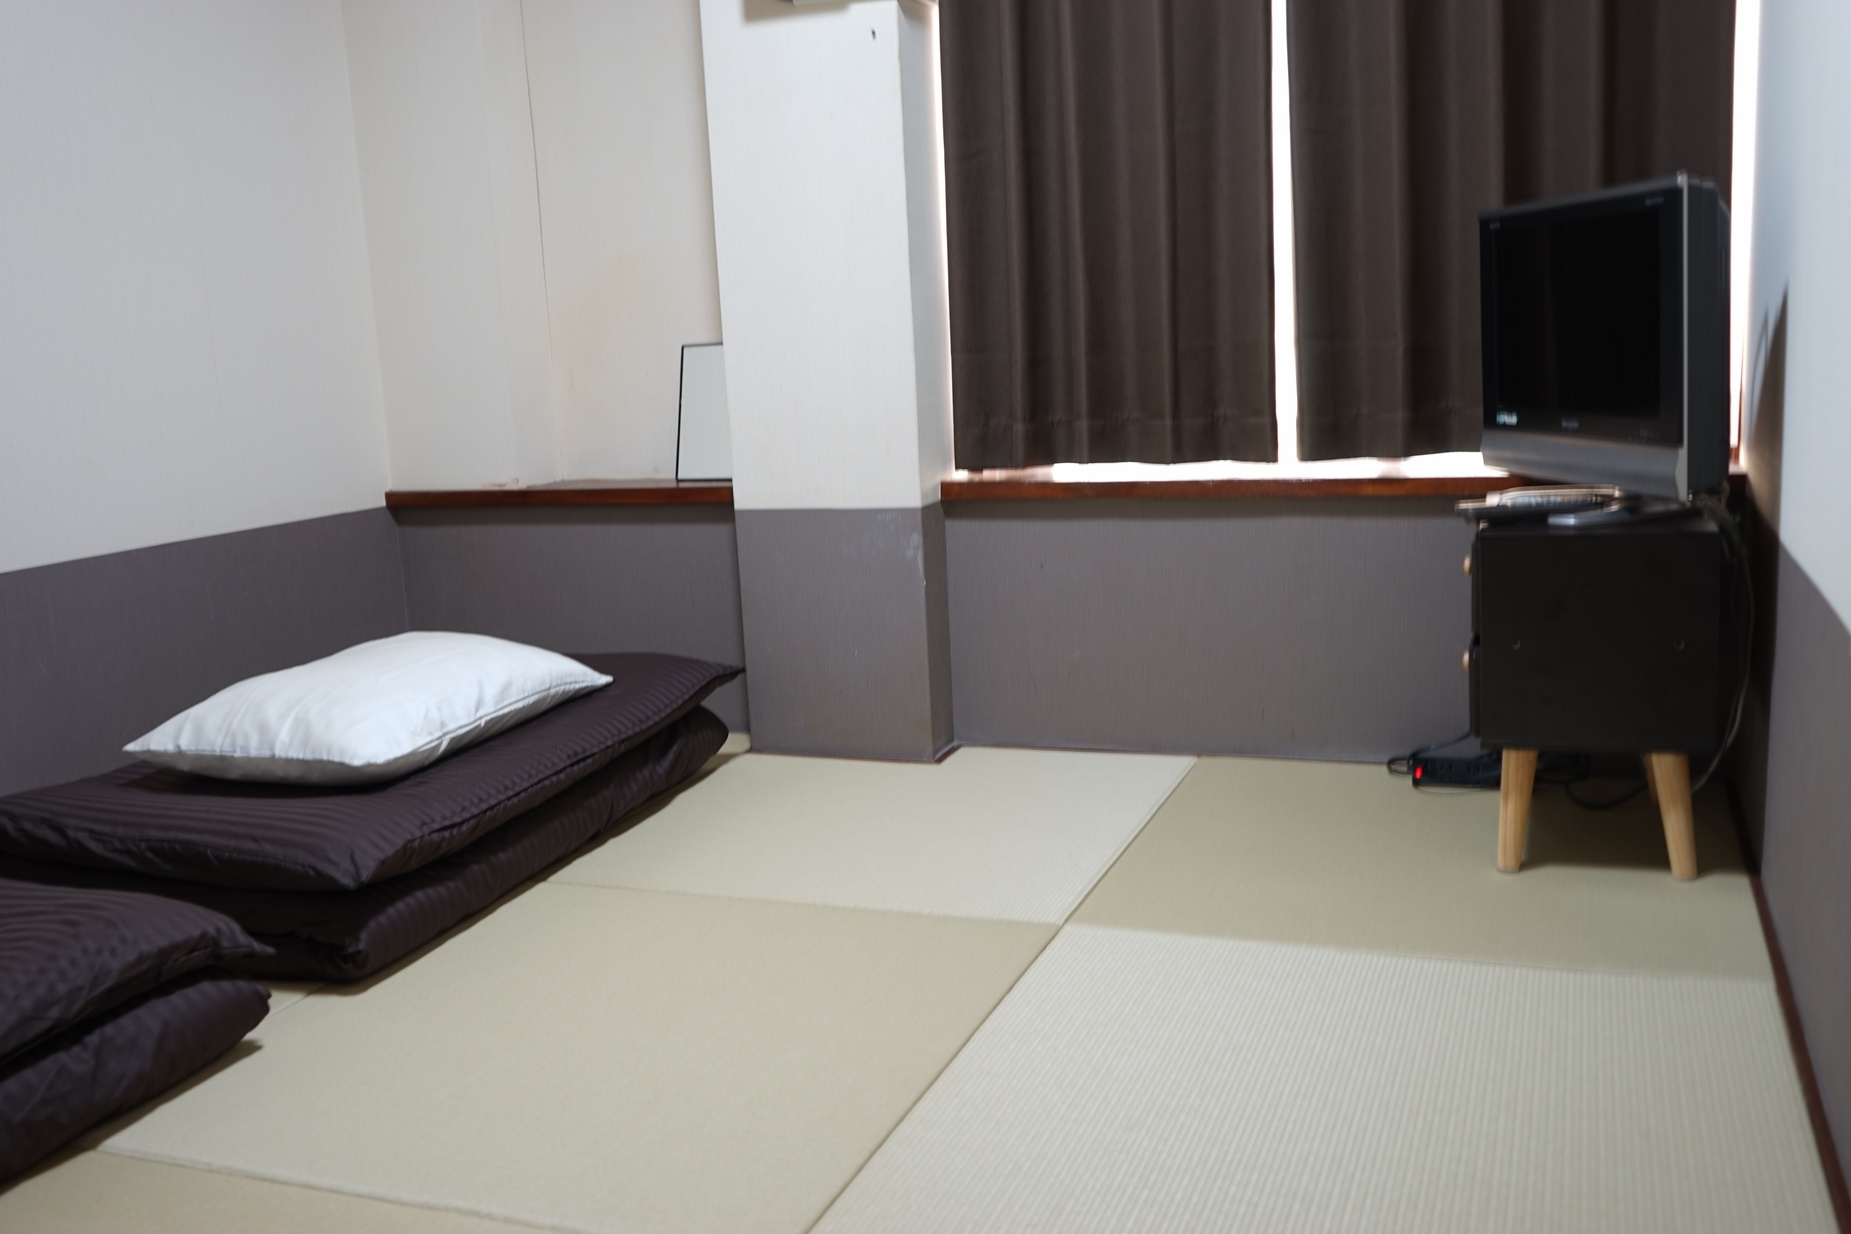 こちらは和紙の琉球畳のツインルームとなります♪